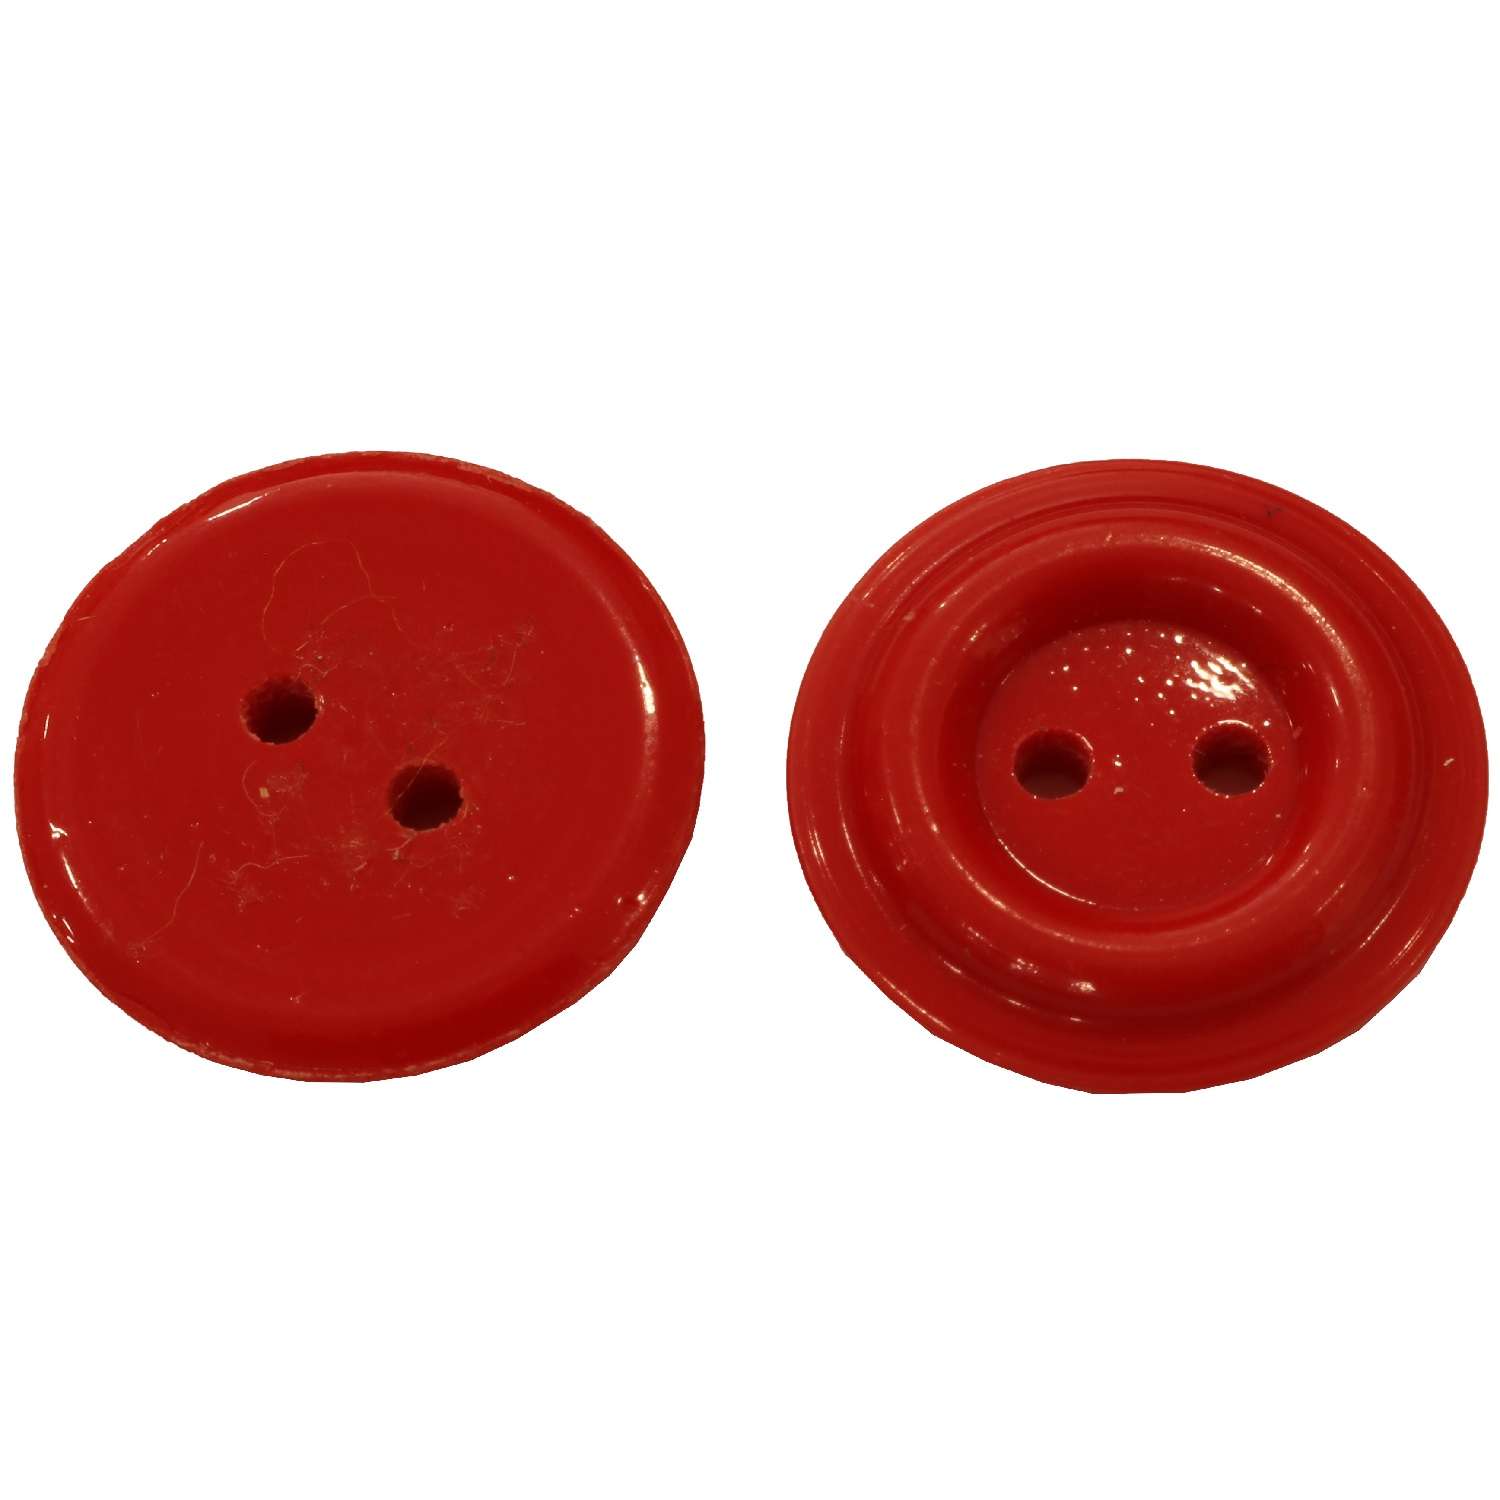 Διάφορα Κουμπιά Part 2 02BTNQ - Plastic Red 17 mm